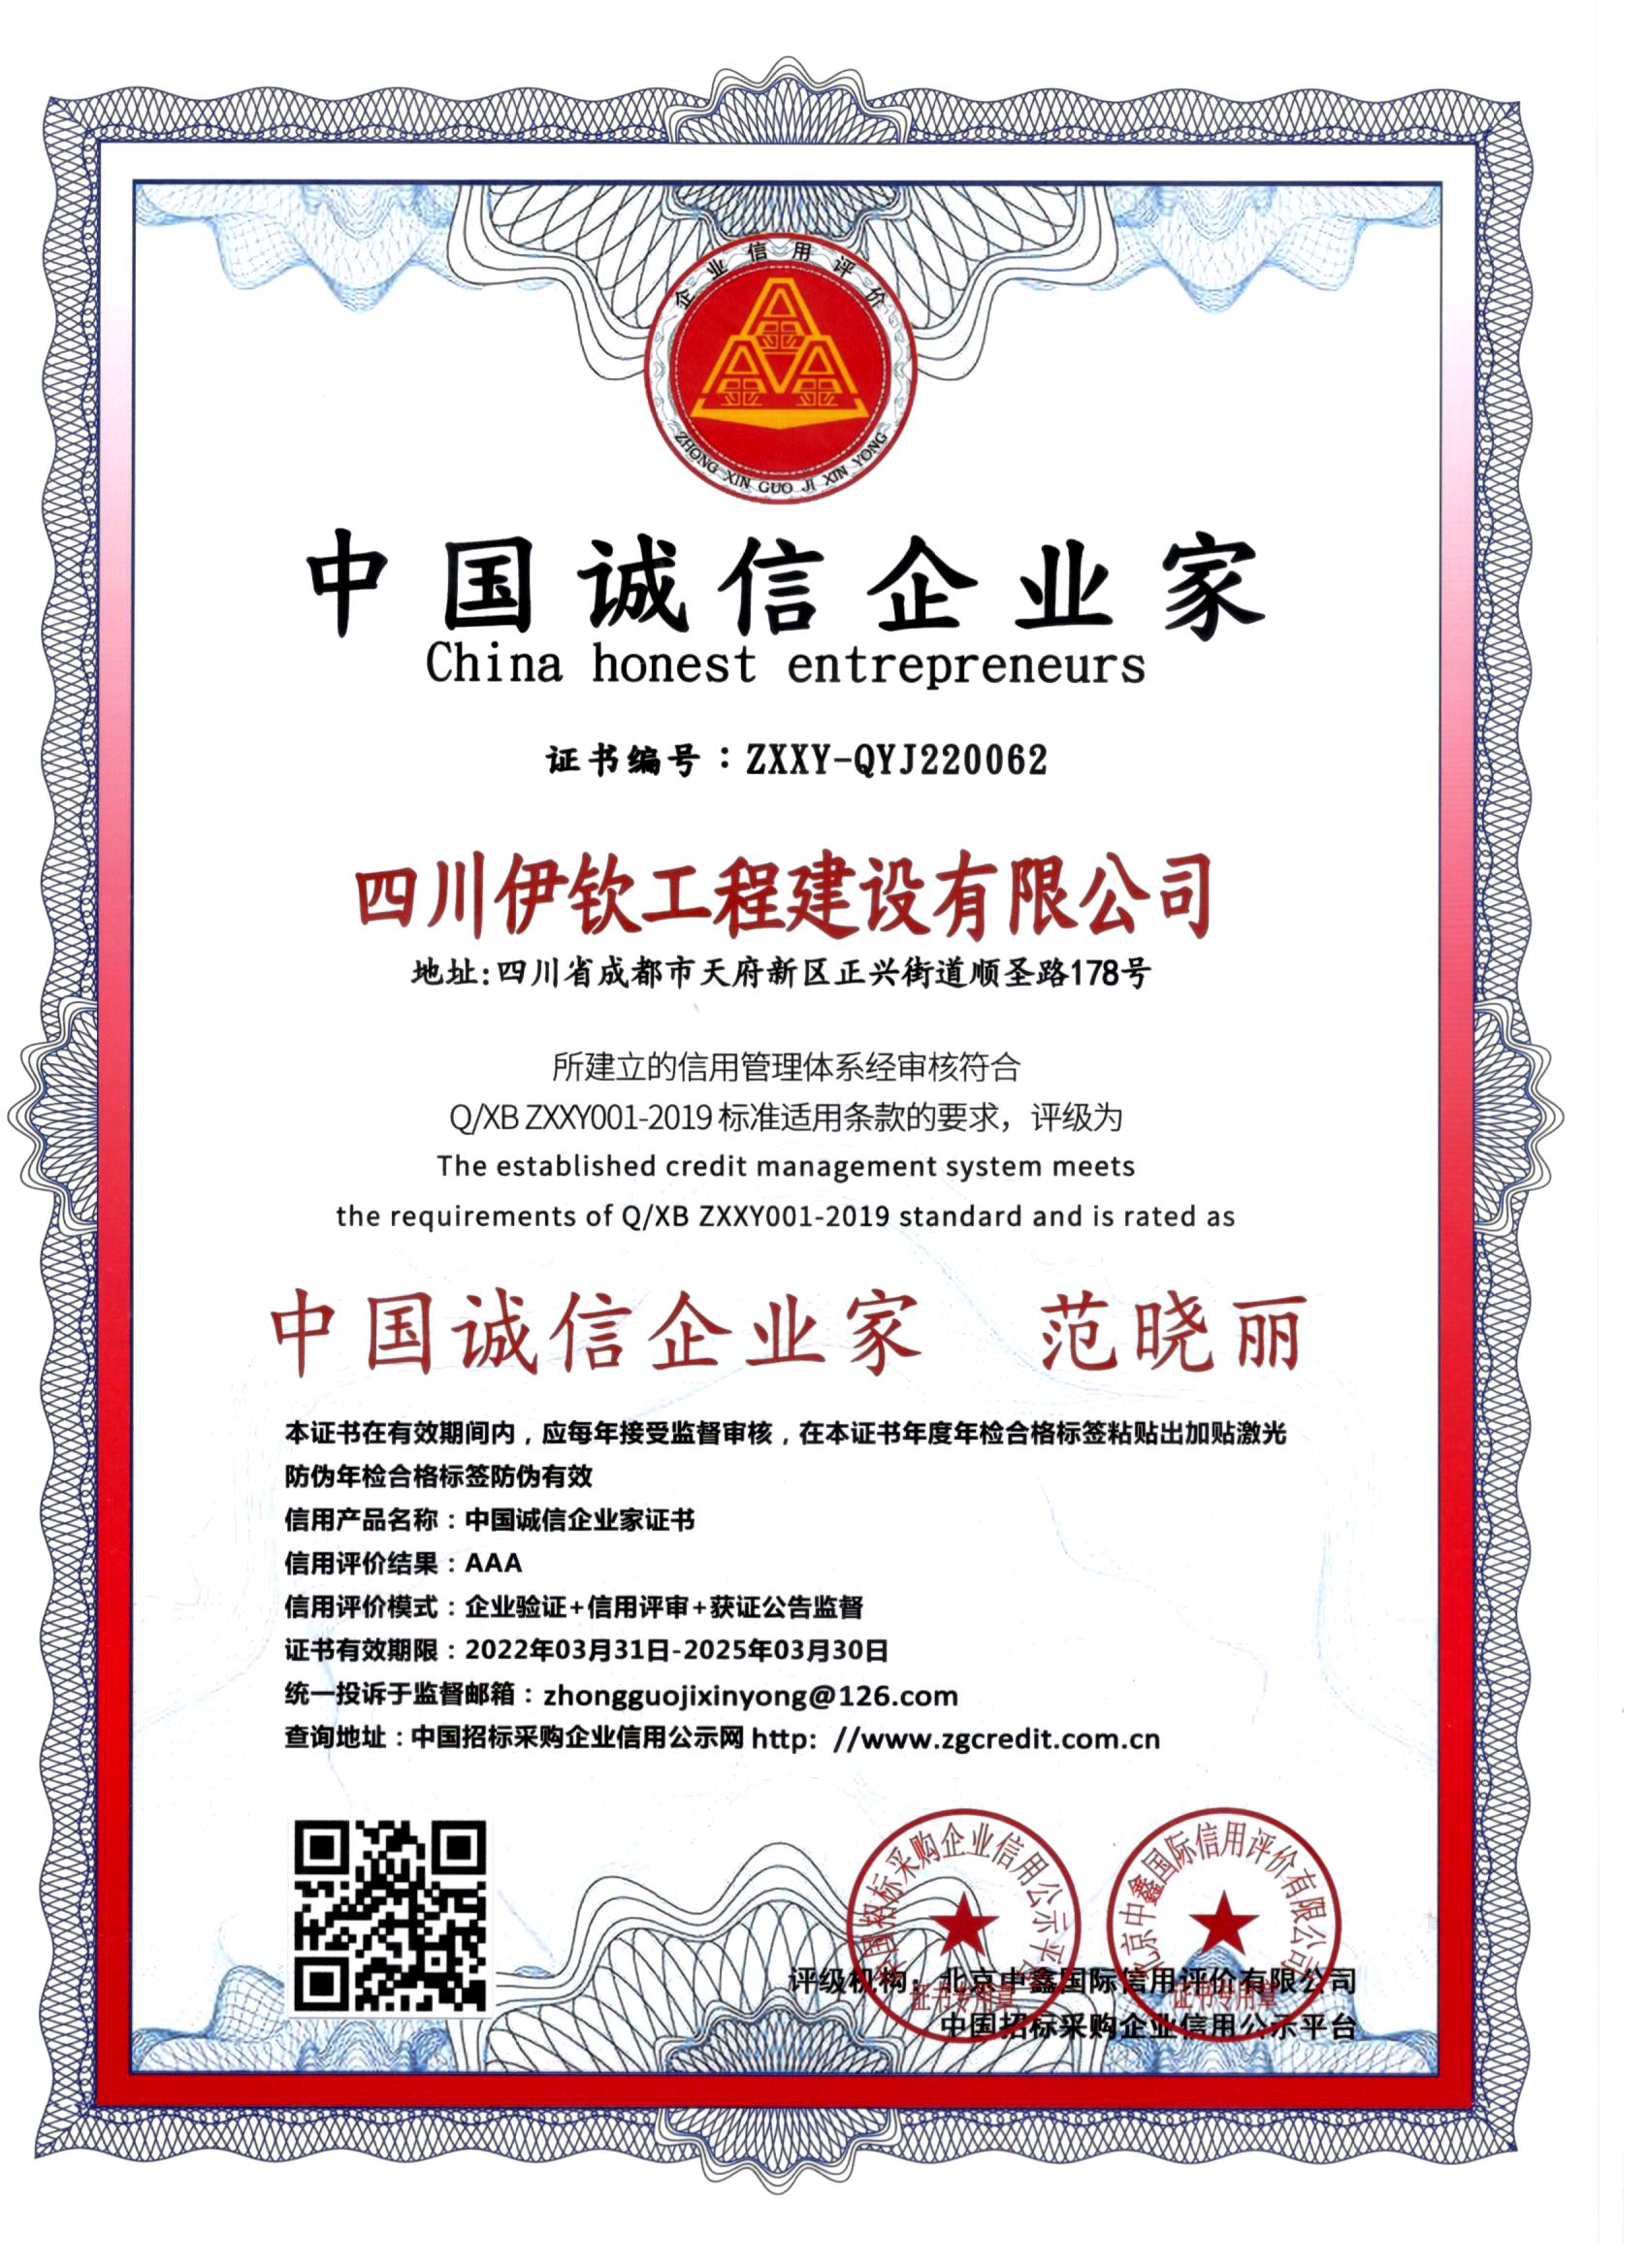 伊钦工程中国诚信企业家证书